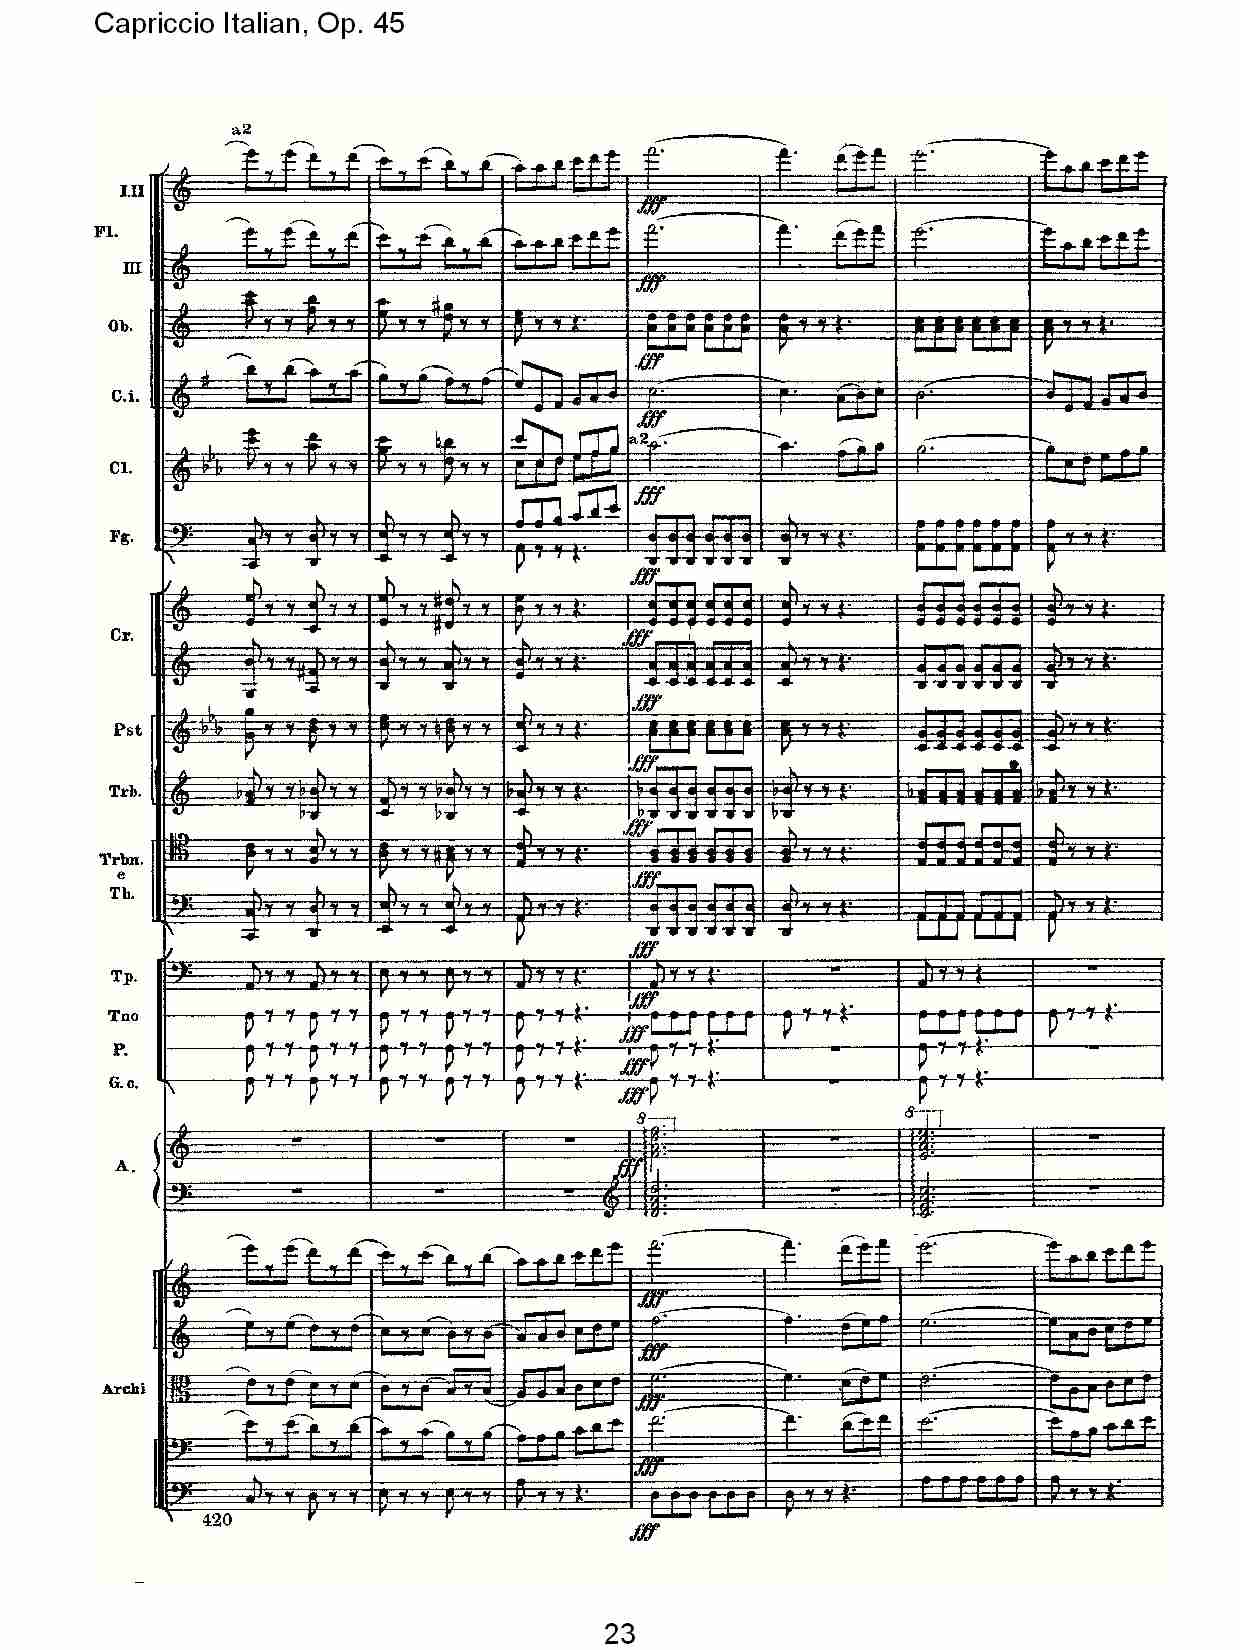 意大利幻想曲 Op 45第二部 五 总谱 歌谱简谱大全